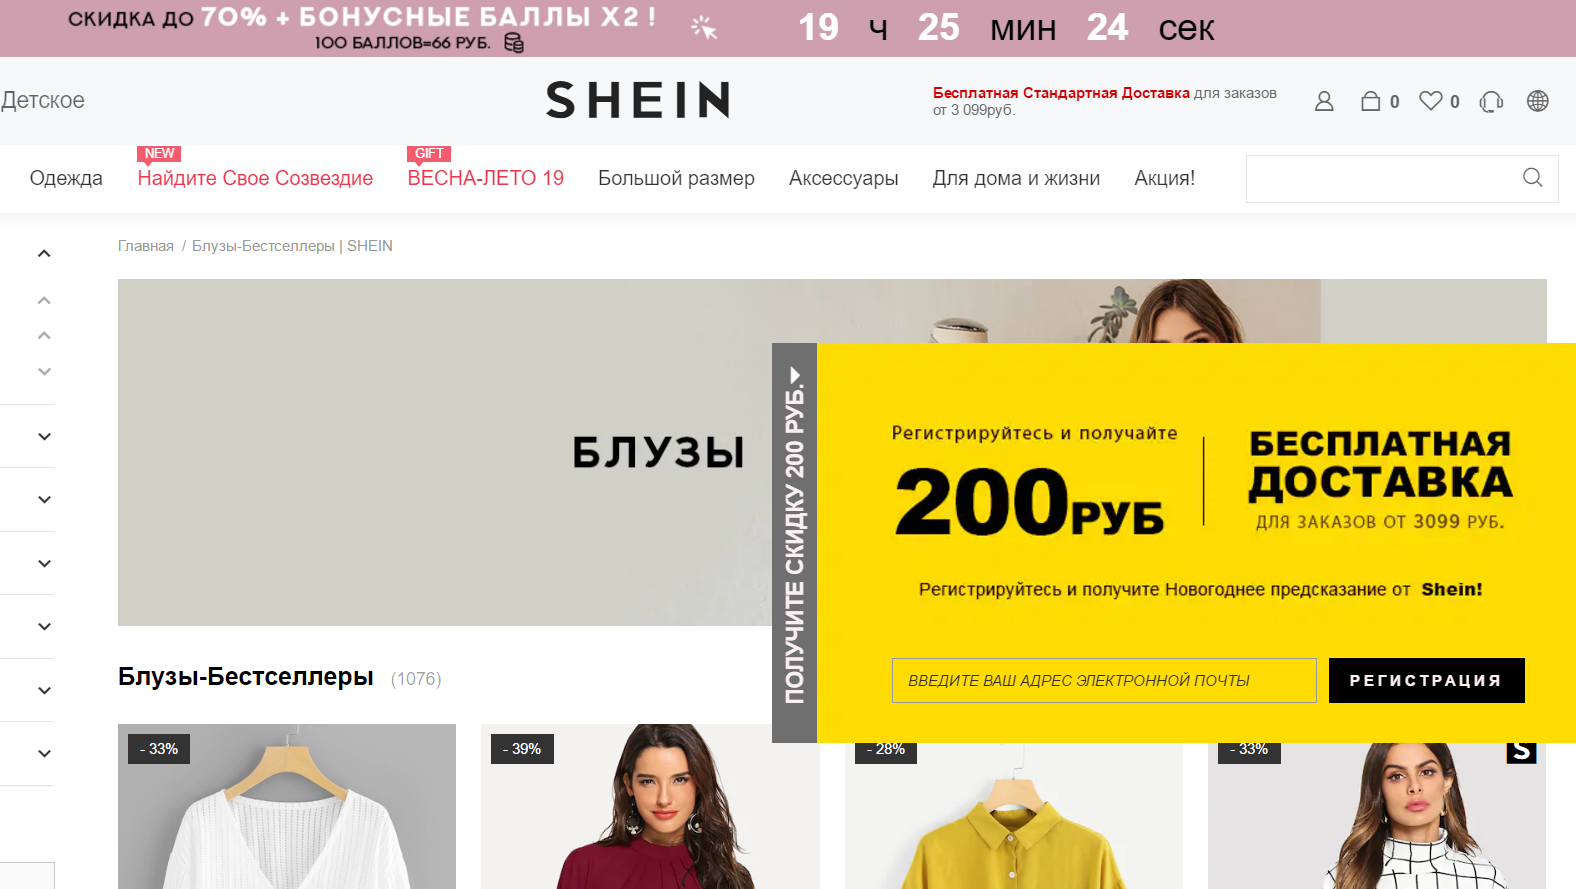 Сайт шеин интернет магазин на русском. SHEIN магазин. Шейн интернет магазин. Шеин магазин. Шеин интернет магазин одежды.